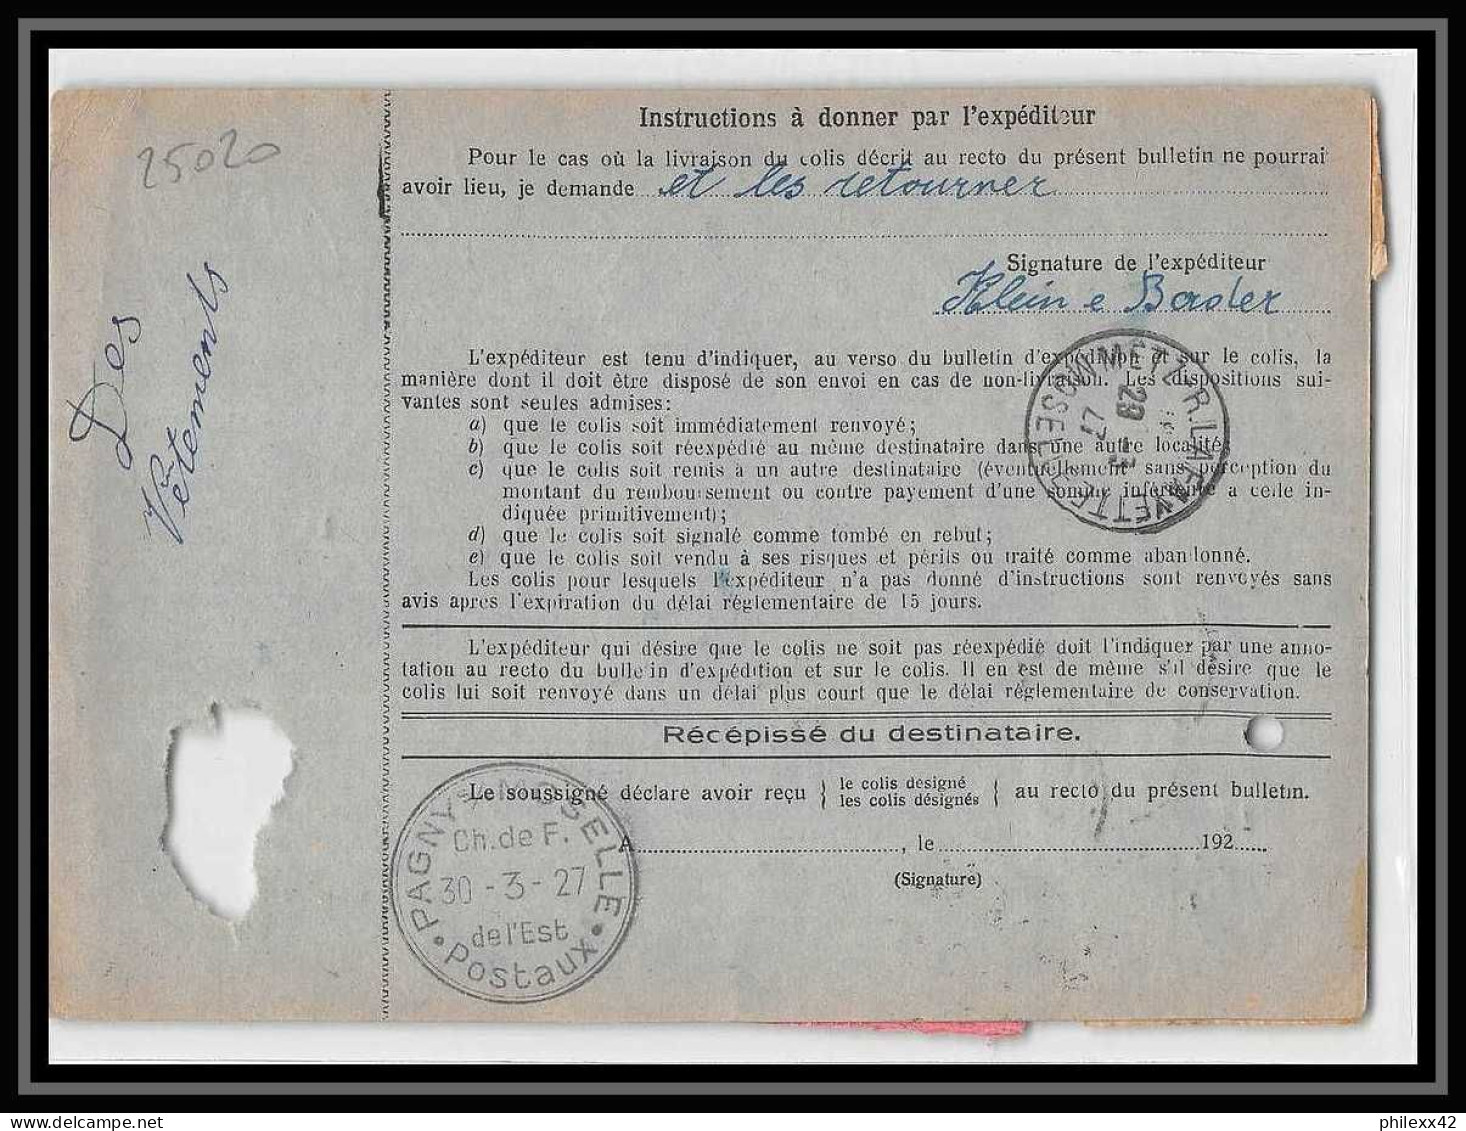 25020 Bulletin D'expédition France Colis Postaux Fiscal Haut Rhin 1927 Guebwiller Semeuse Merson 123 Valeur Déclarée - Covers & Documents